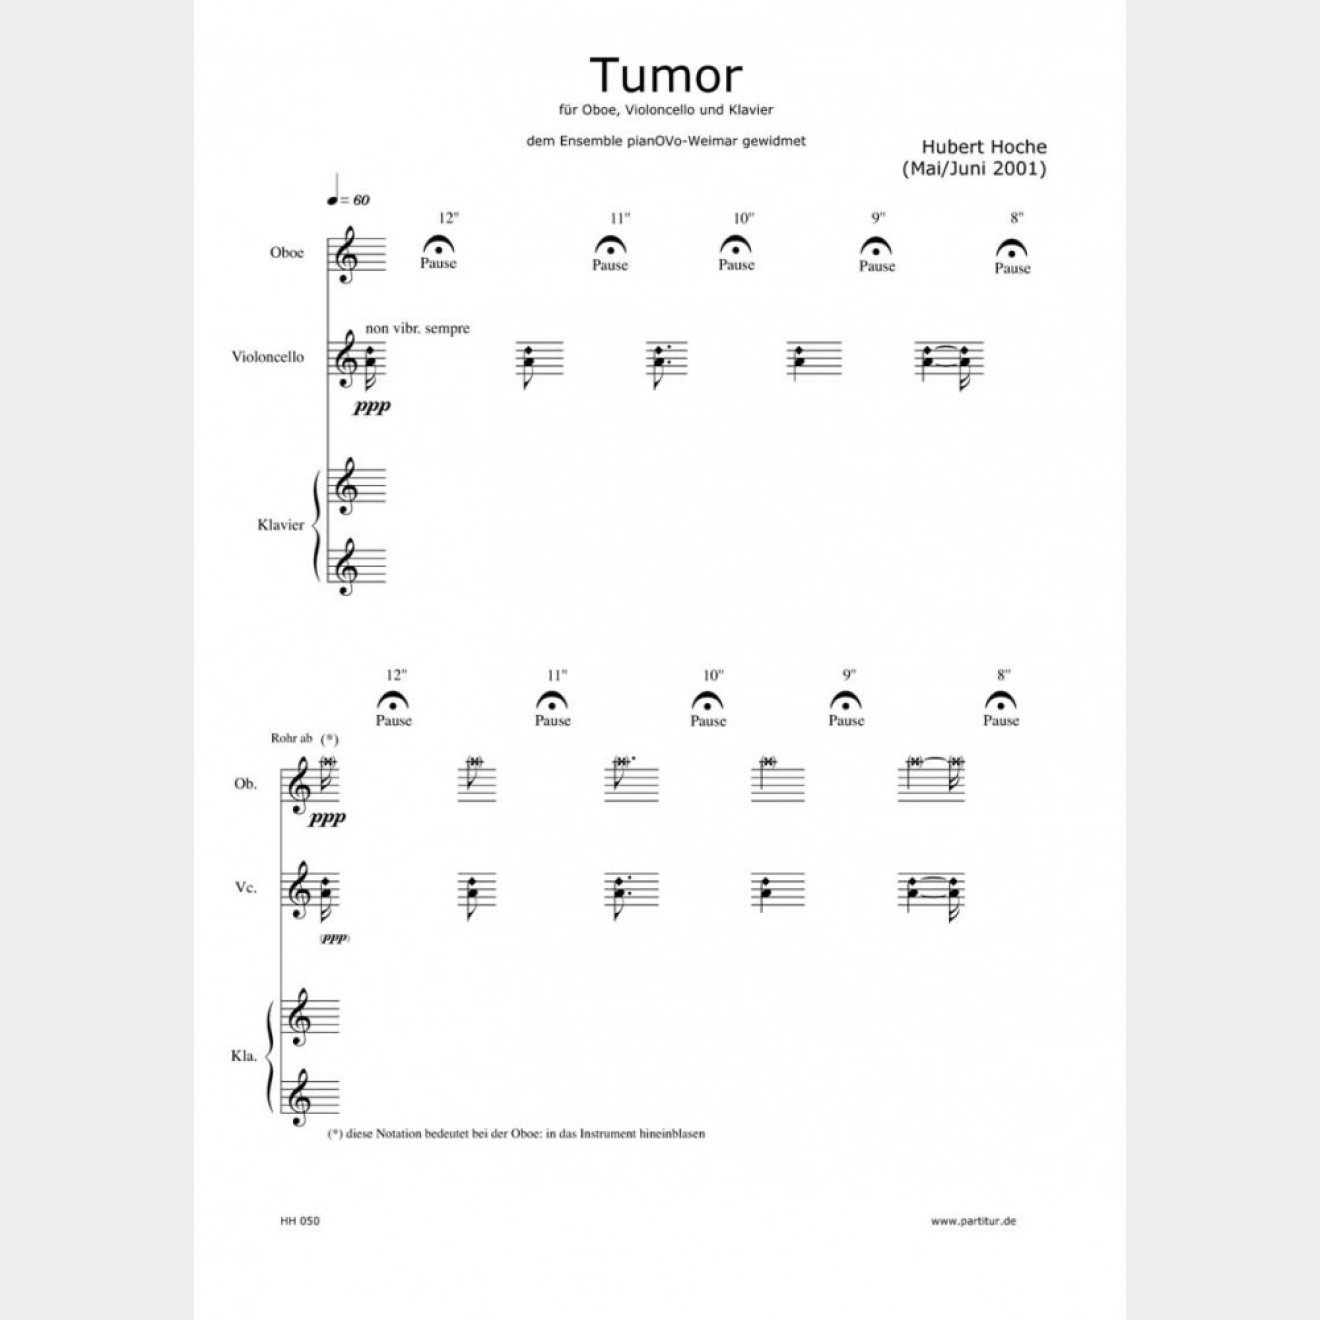 Tumor, 21` (Paritur und Stimmen)